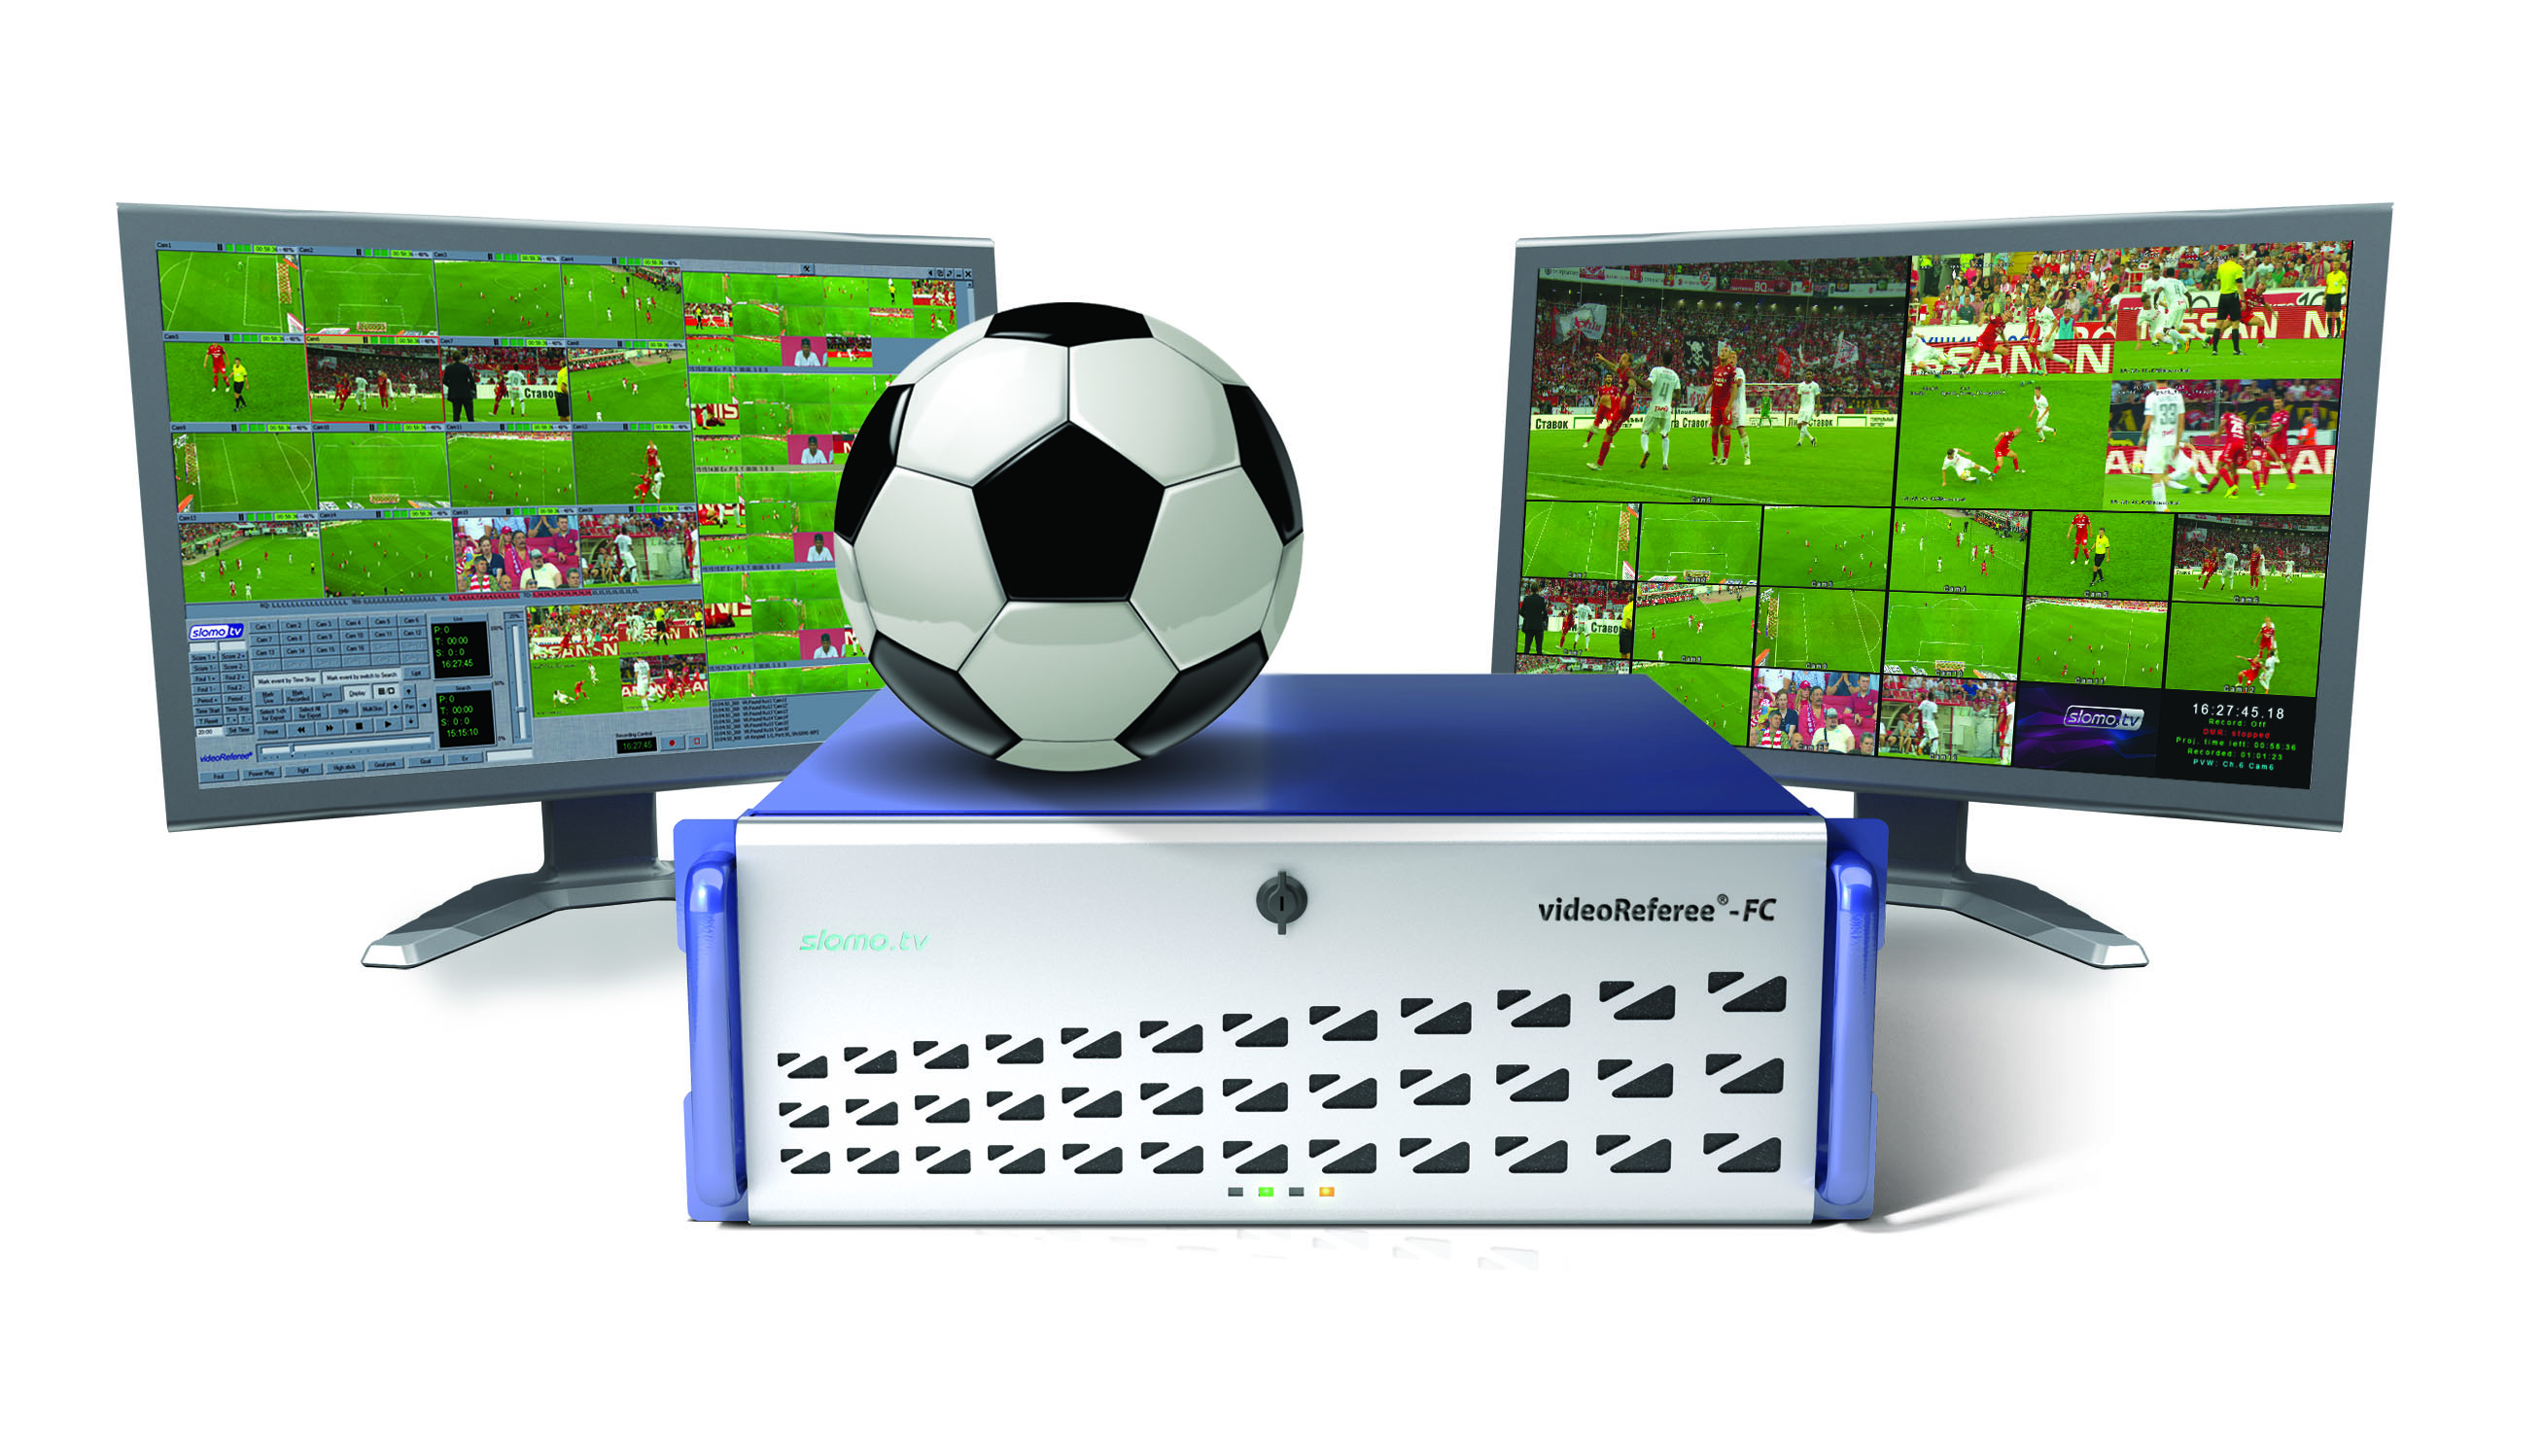 Slomo.tv lancia Enhanced VideoReferee FC System all’IBC 2018